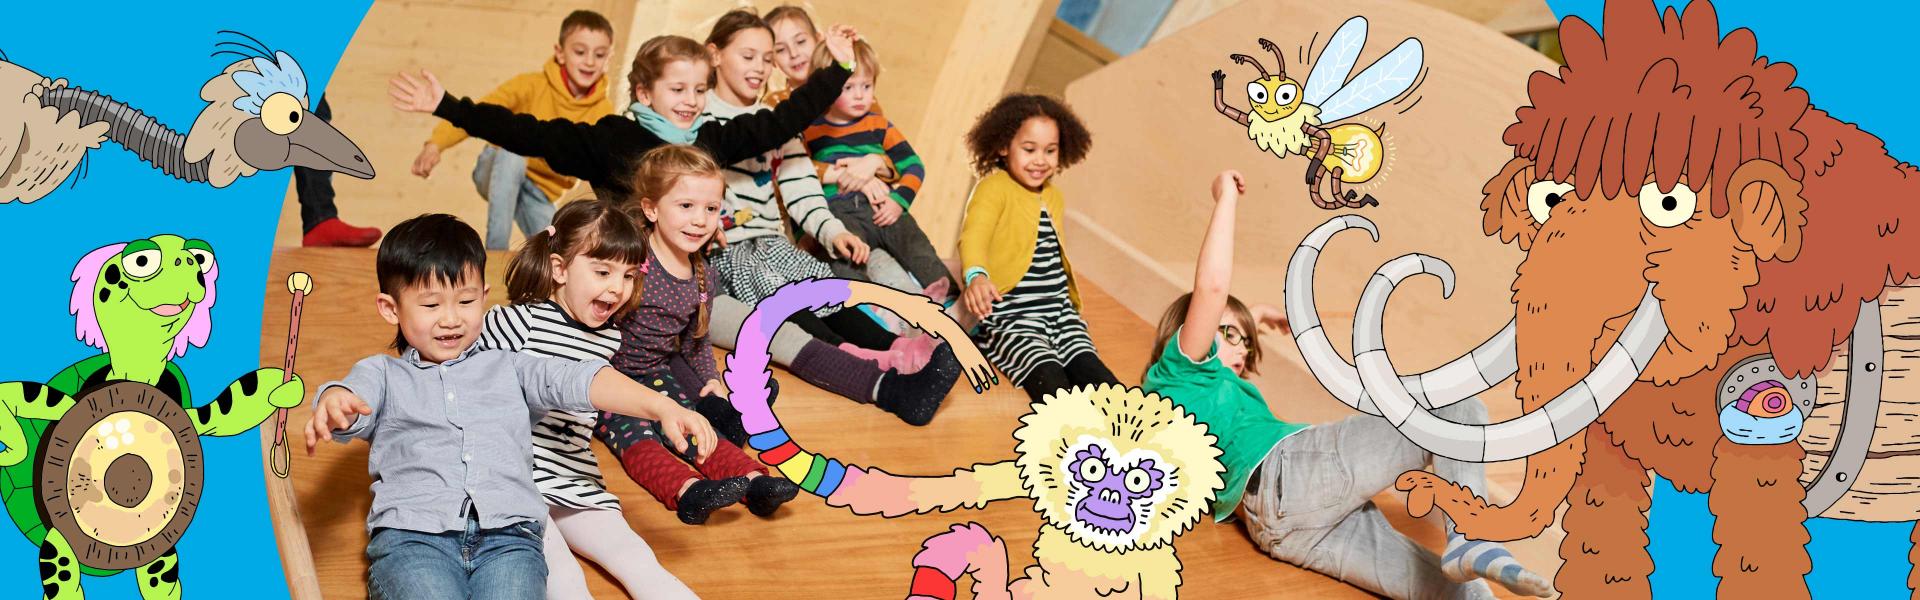 Graphik mit bunten Tieren, in der Mitte ein Foto eingebaut, auf dem Kinder eine Holzfläche runterrutschen